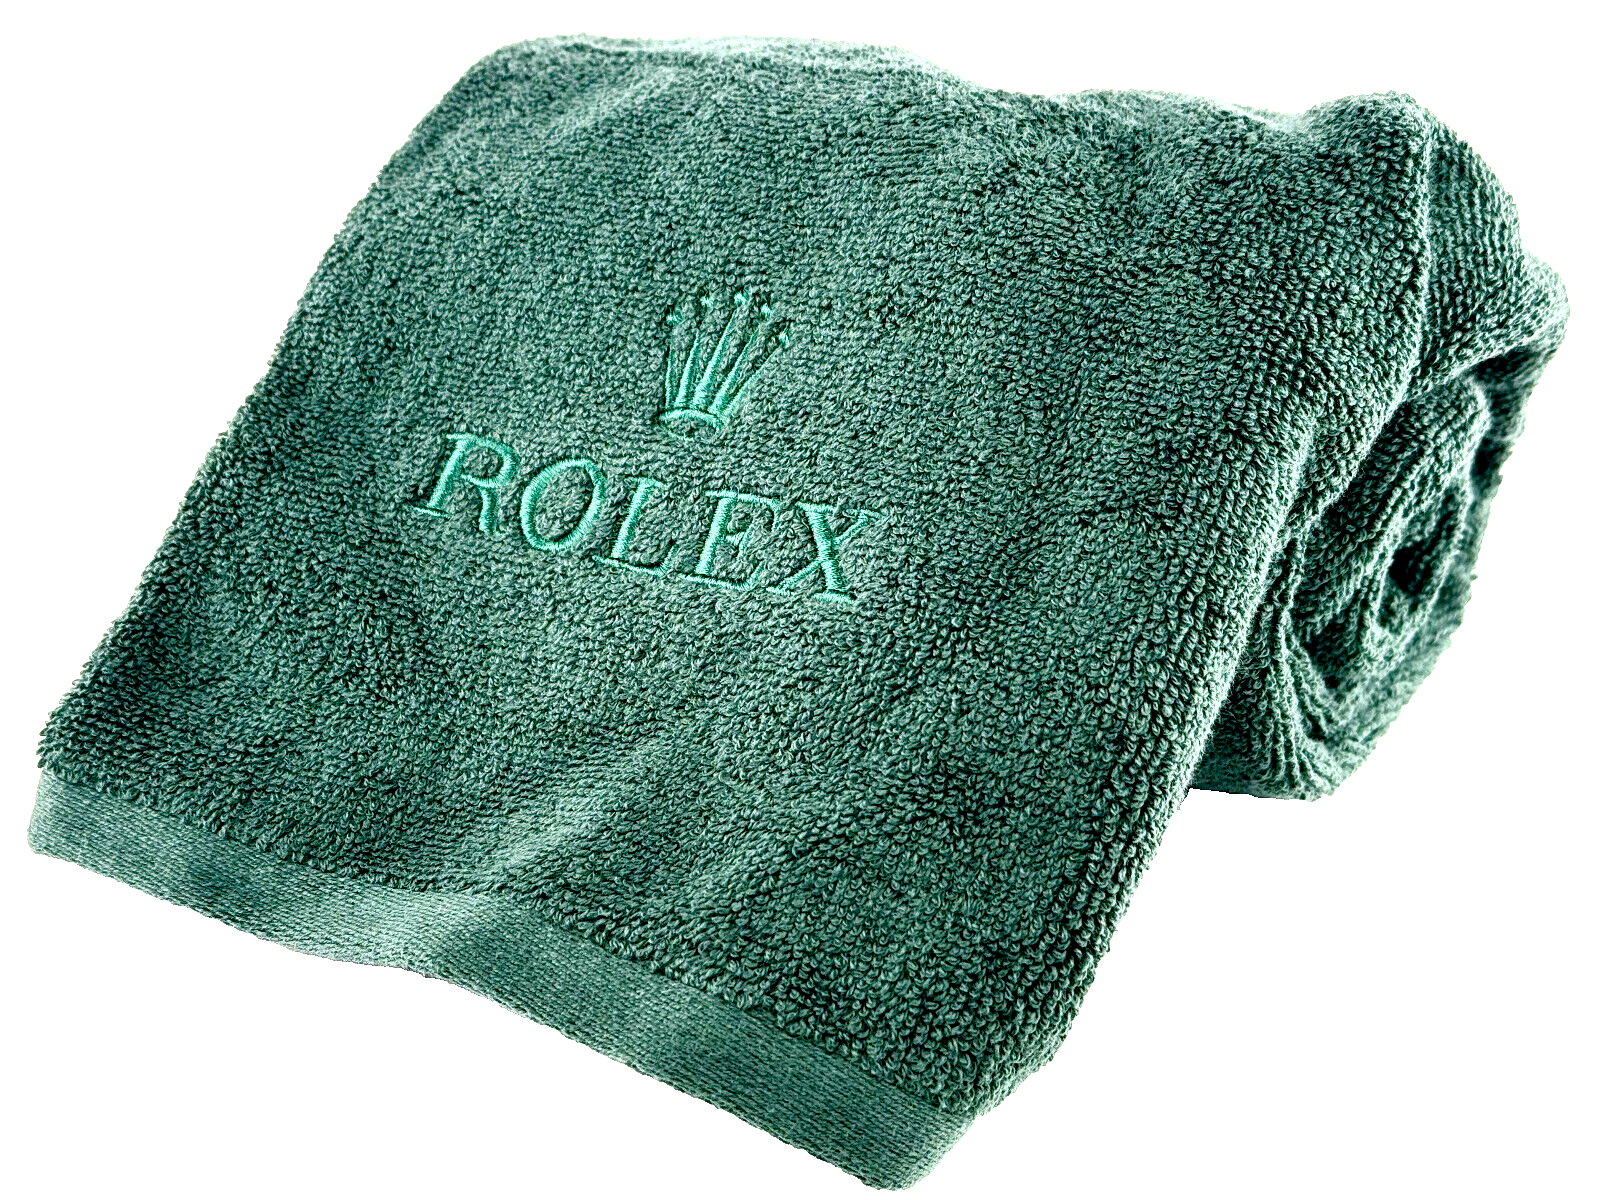 Rolex toiletry bag towel green